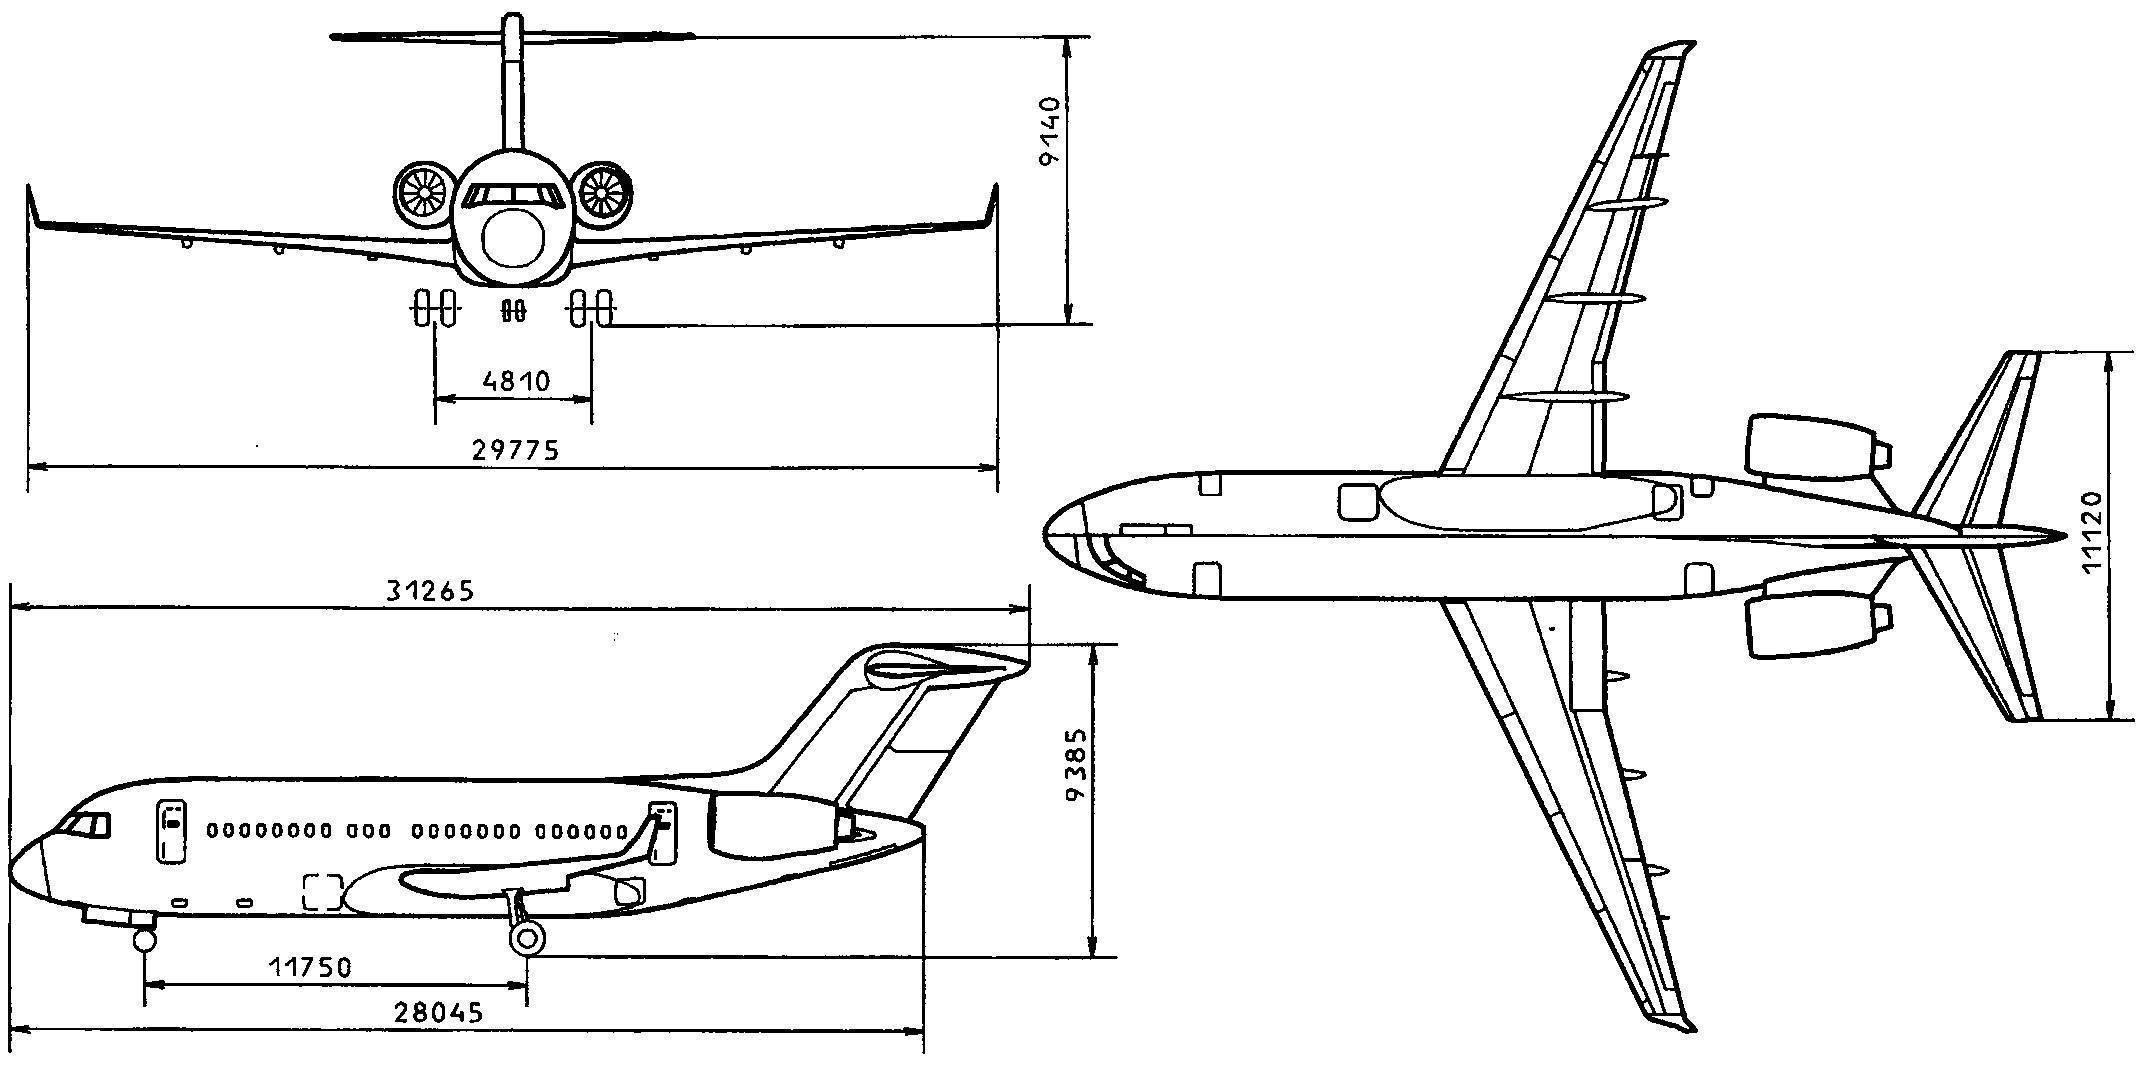 Ближнемагистральный пассажирский самолёт як-40